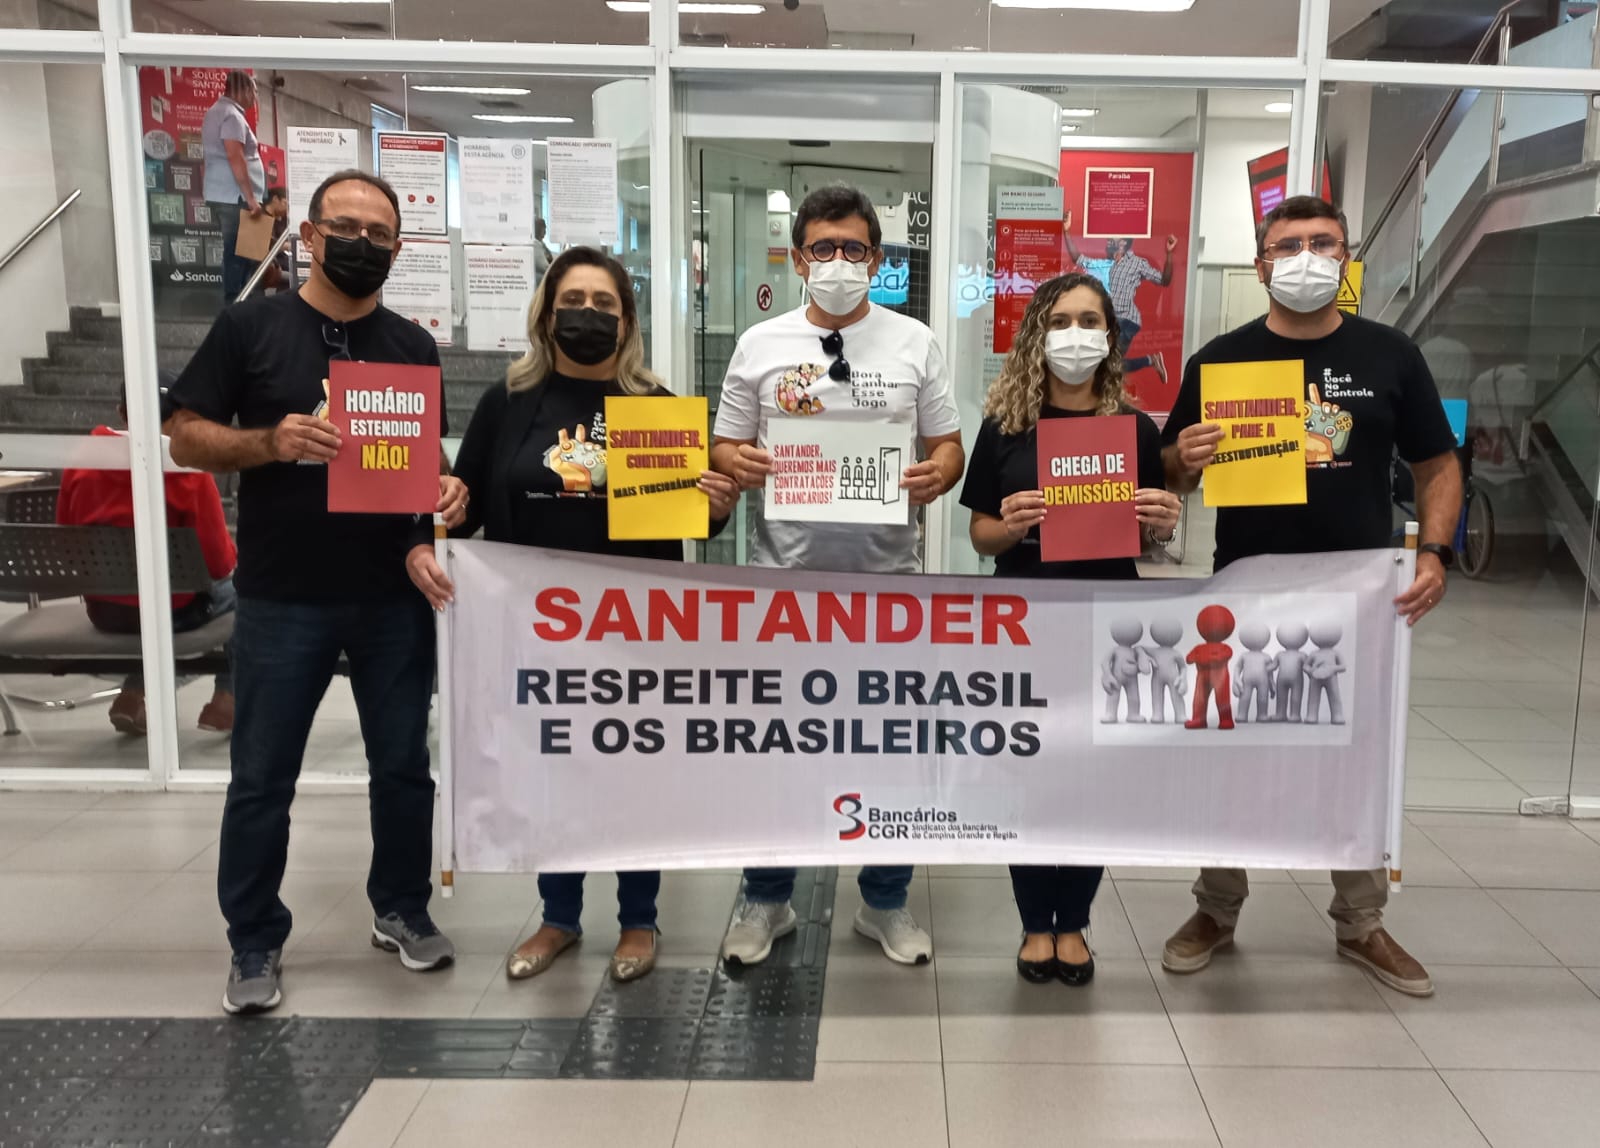 Protestos contra o Santander 27Jul (14)